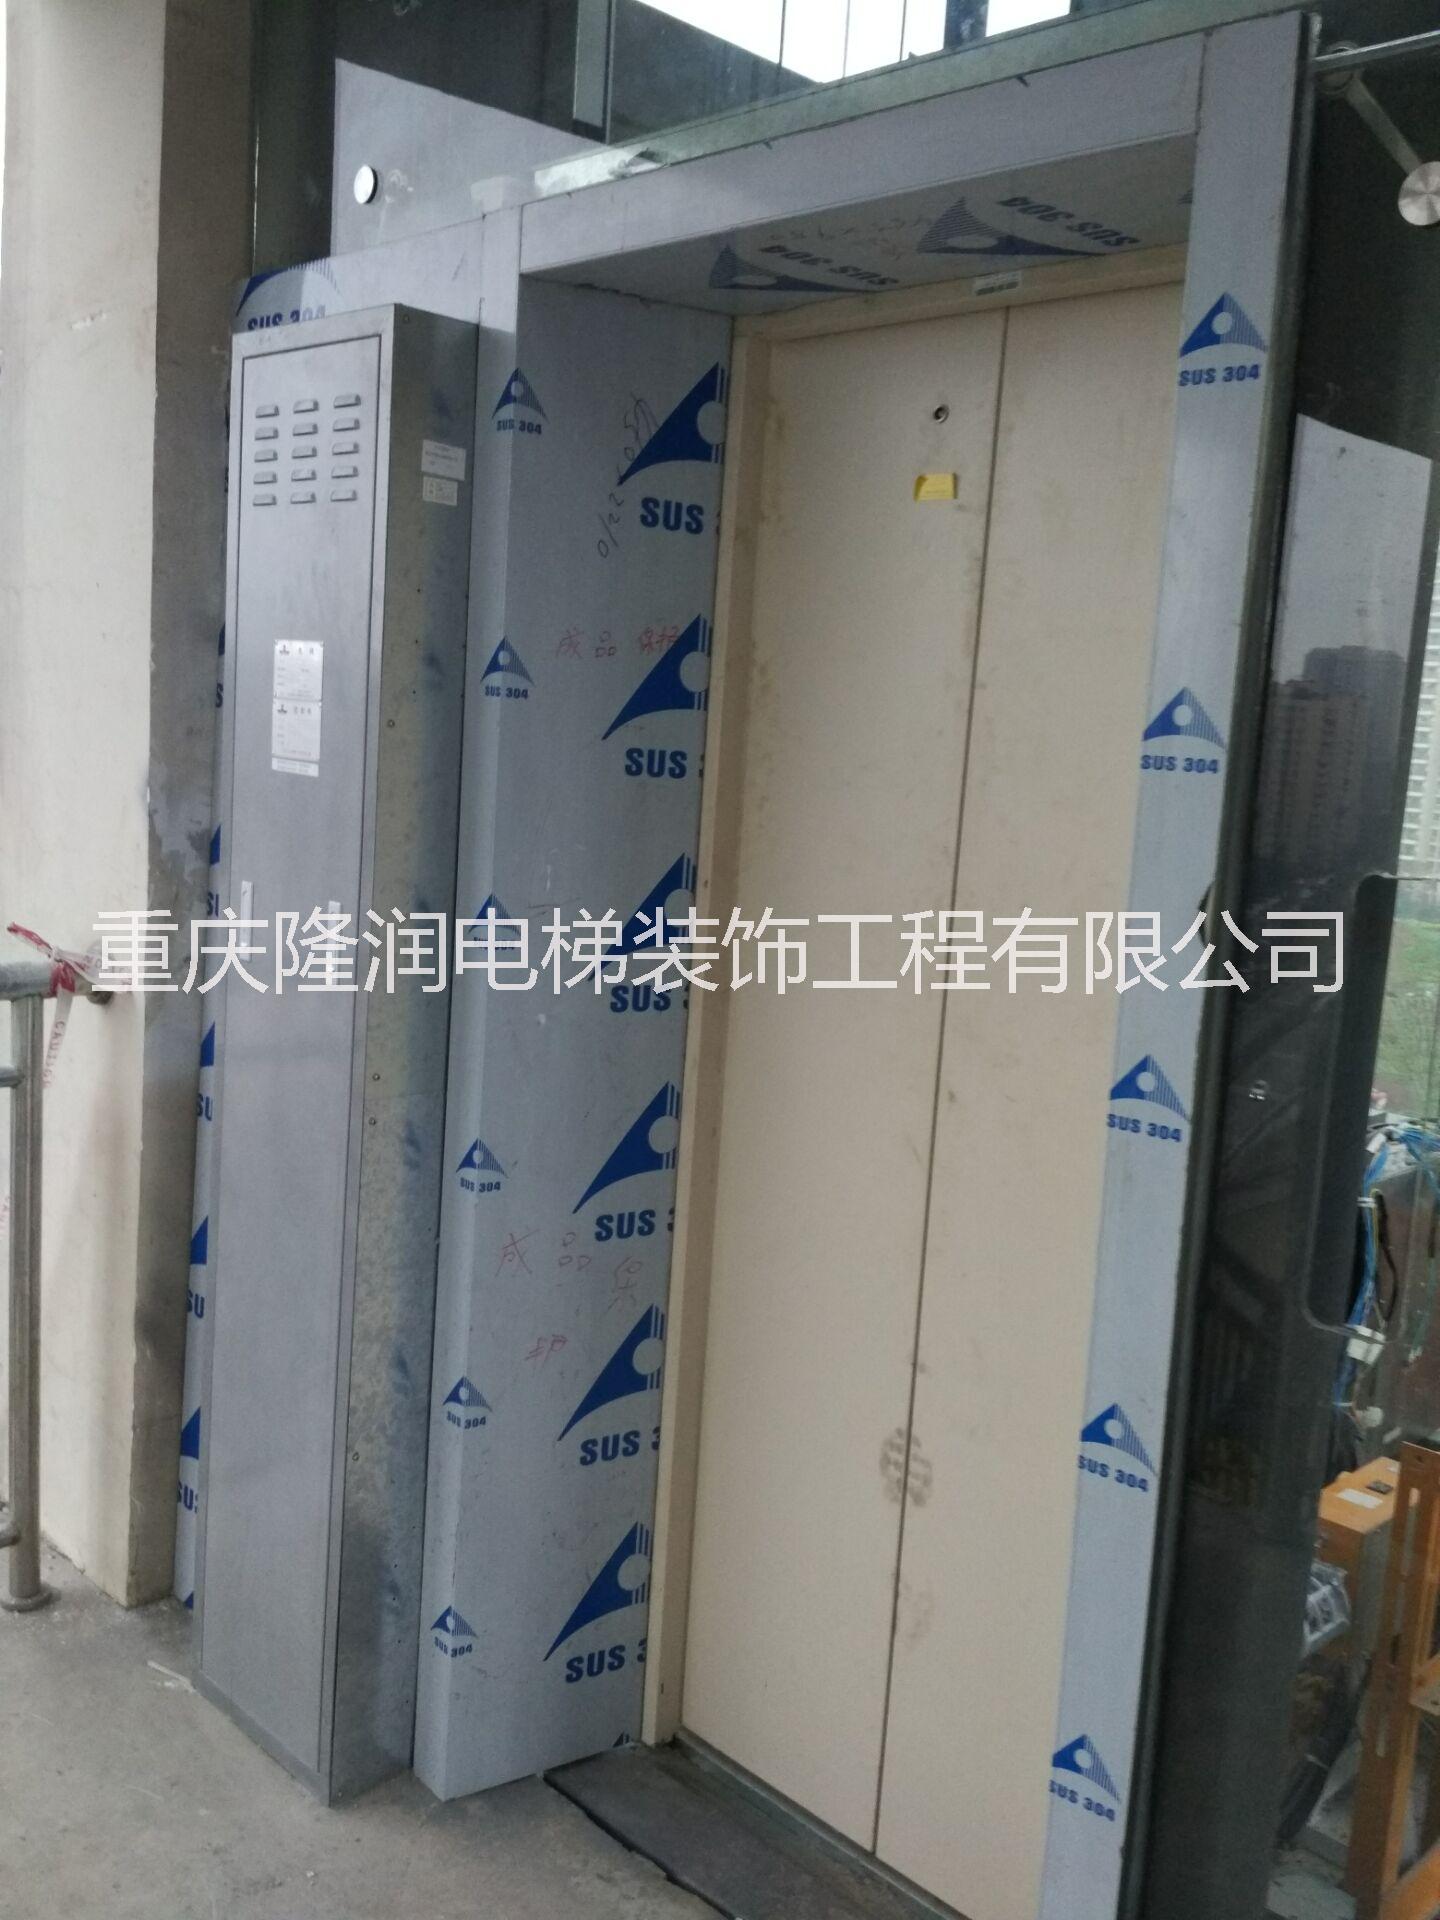 电梯门套 不锈钢门套 厂家直销 电梯门套设计制作安装 大理石门套 玻璃门套图片